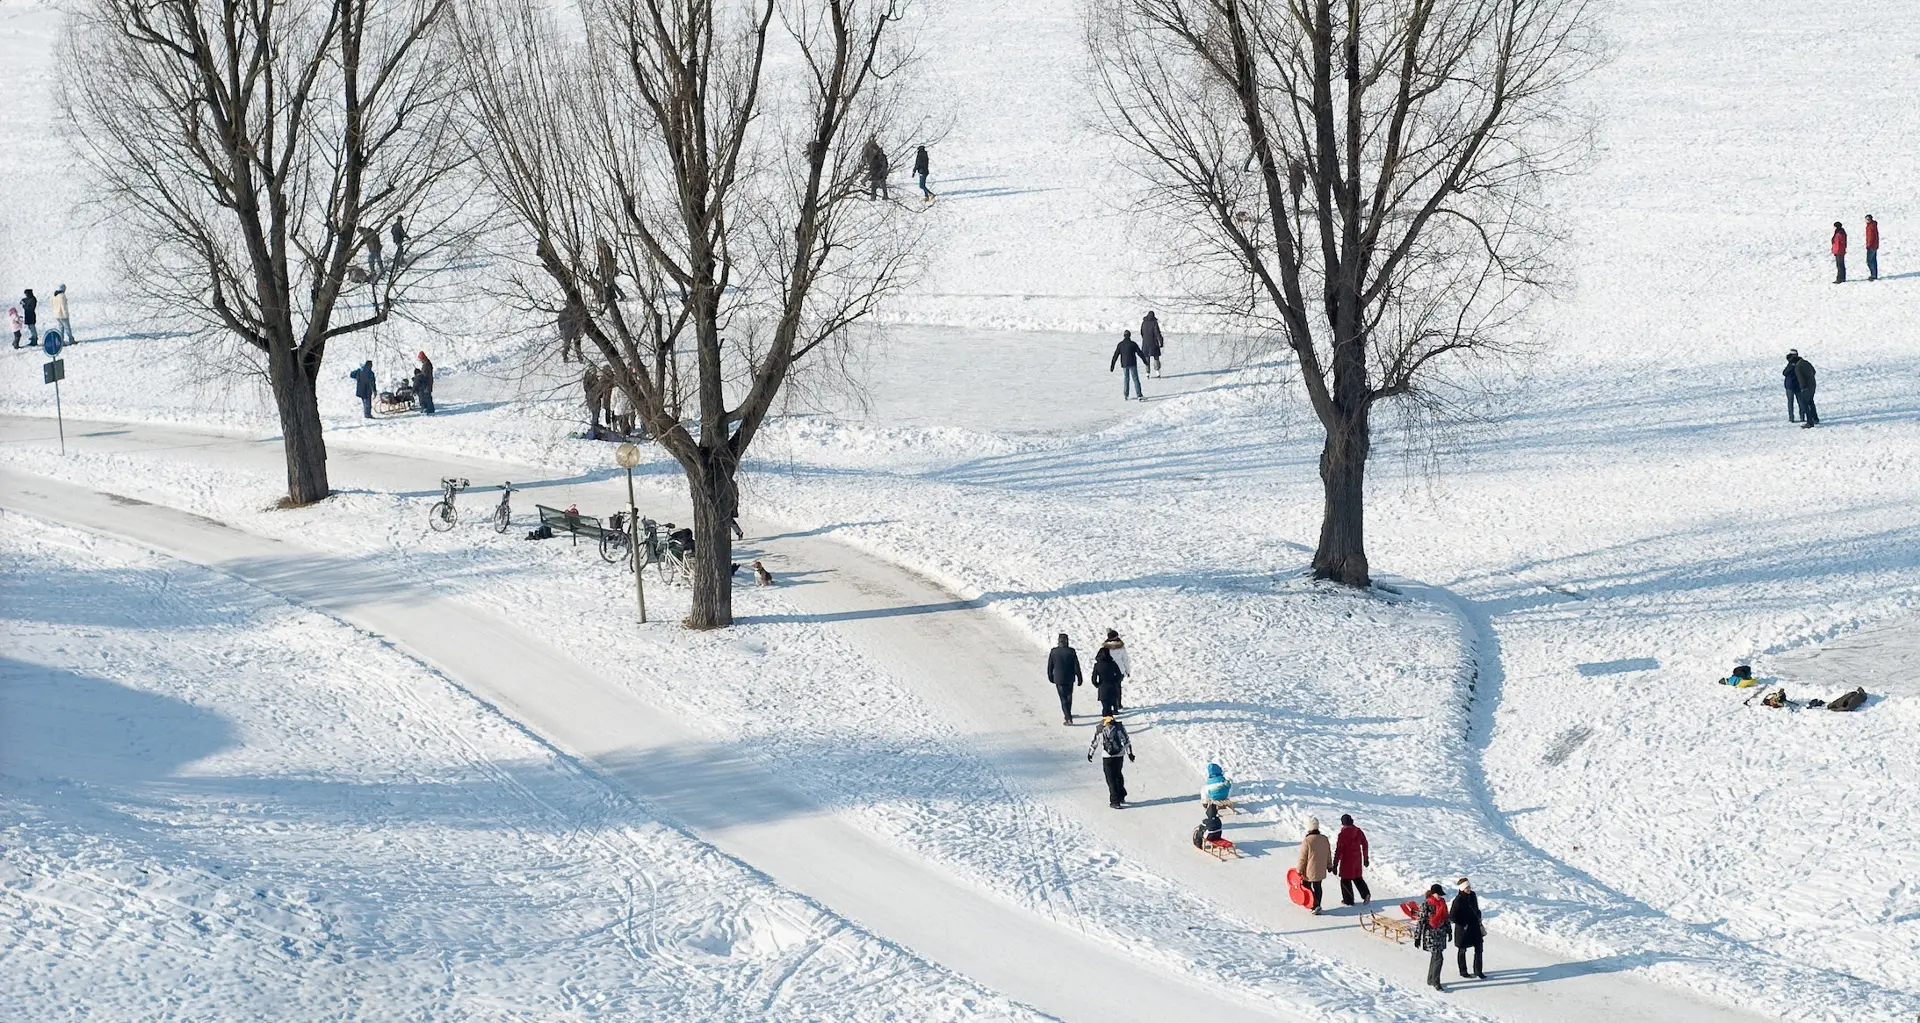 winter activities sports